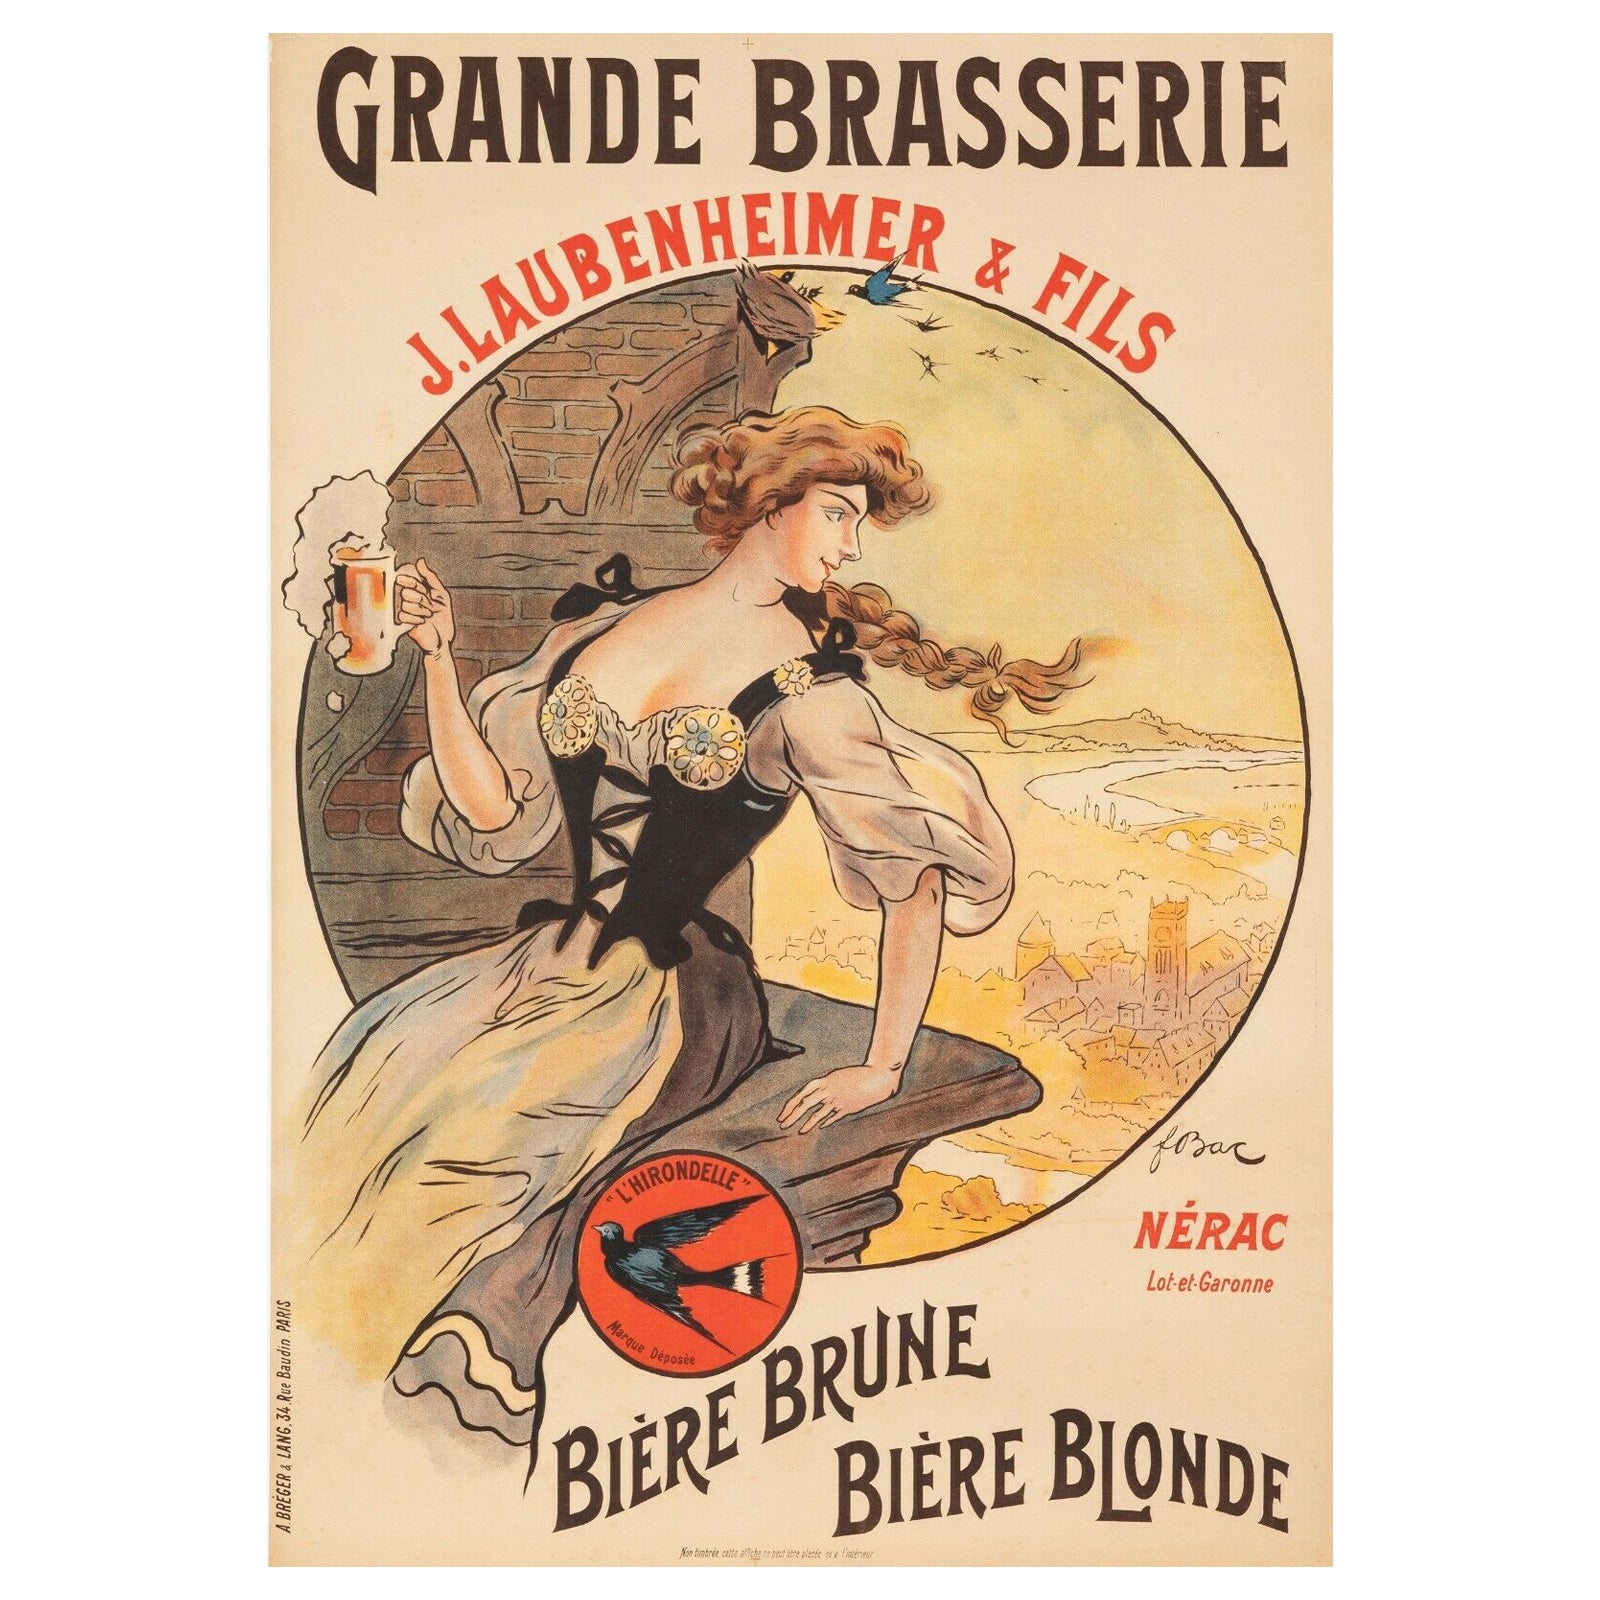 Original Vintage Poster-F. Bac-Laubenheimer Brasserie-Beer-Hirondelle, 1908 For Sale